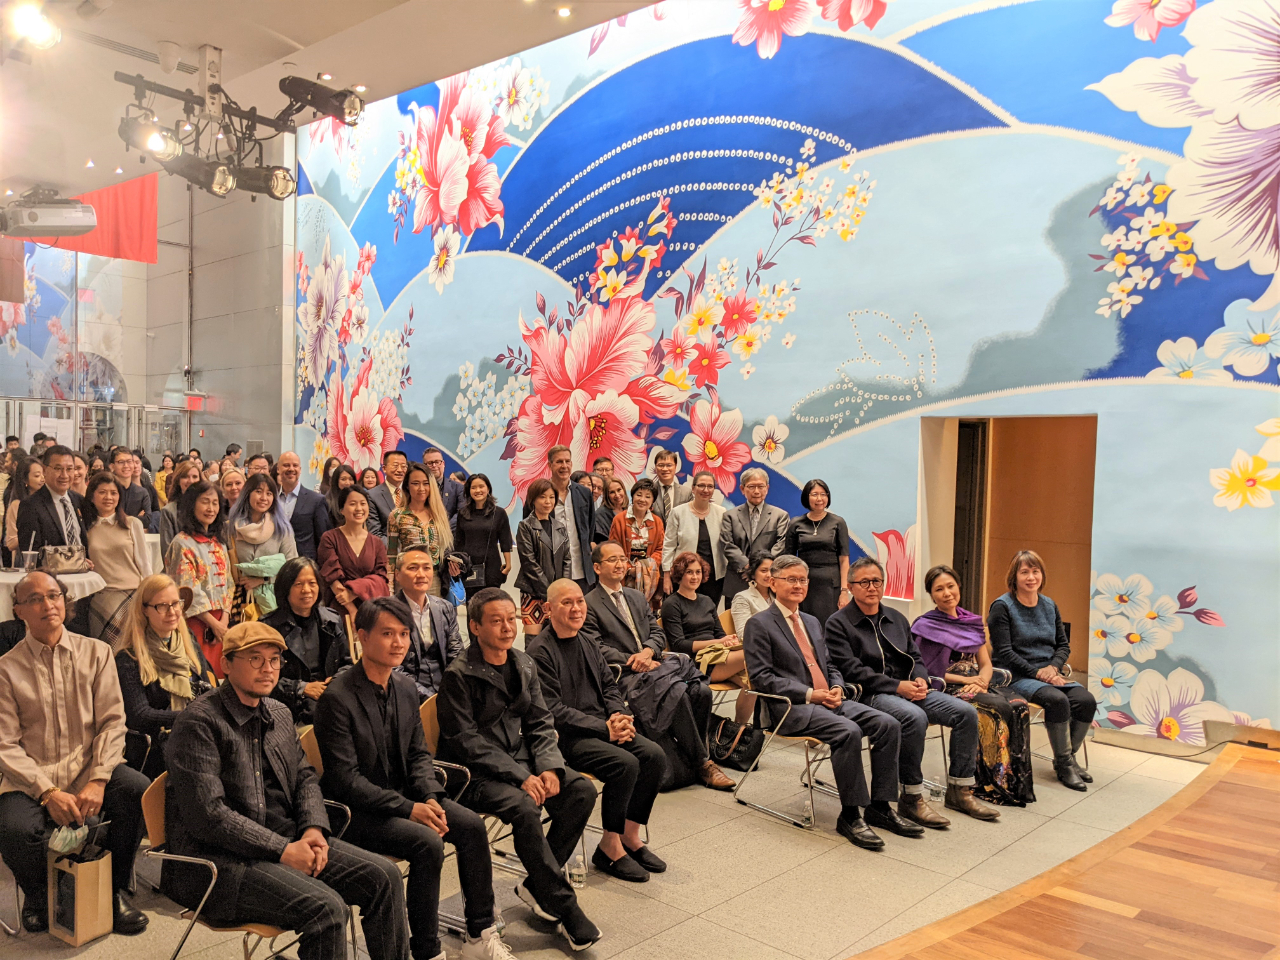 駐紐約辦事處委託臺灣藝術家林明弘在長達17公尺、高8公尺的大廳牆面上創作作品《島嶼生活》（Island Life），讓辦事處大廳煥然一新，2022年10月18日邀請紐約重要藝文界及政界、僑界人士共同揭幕。